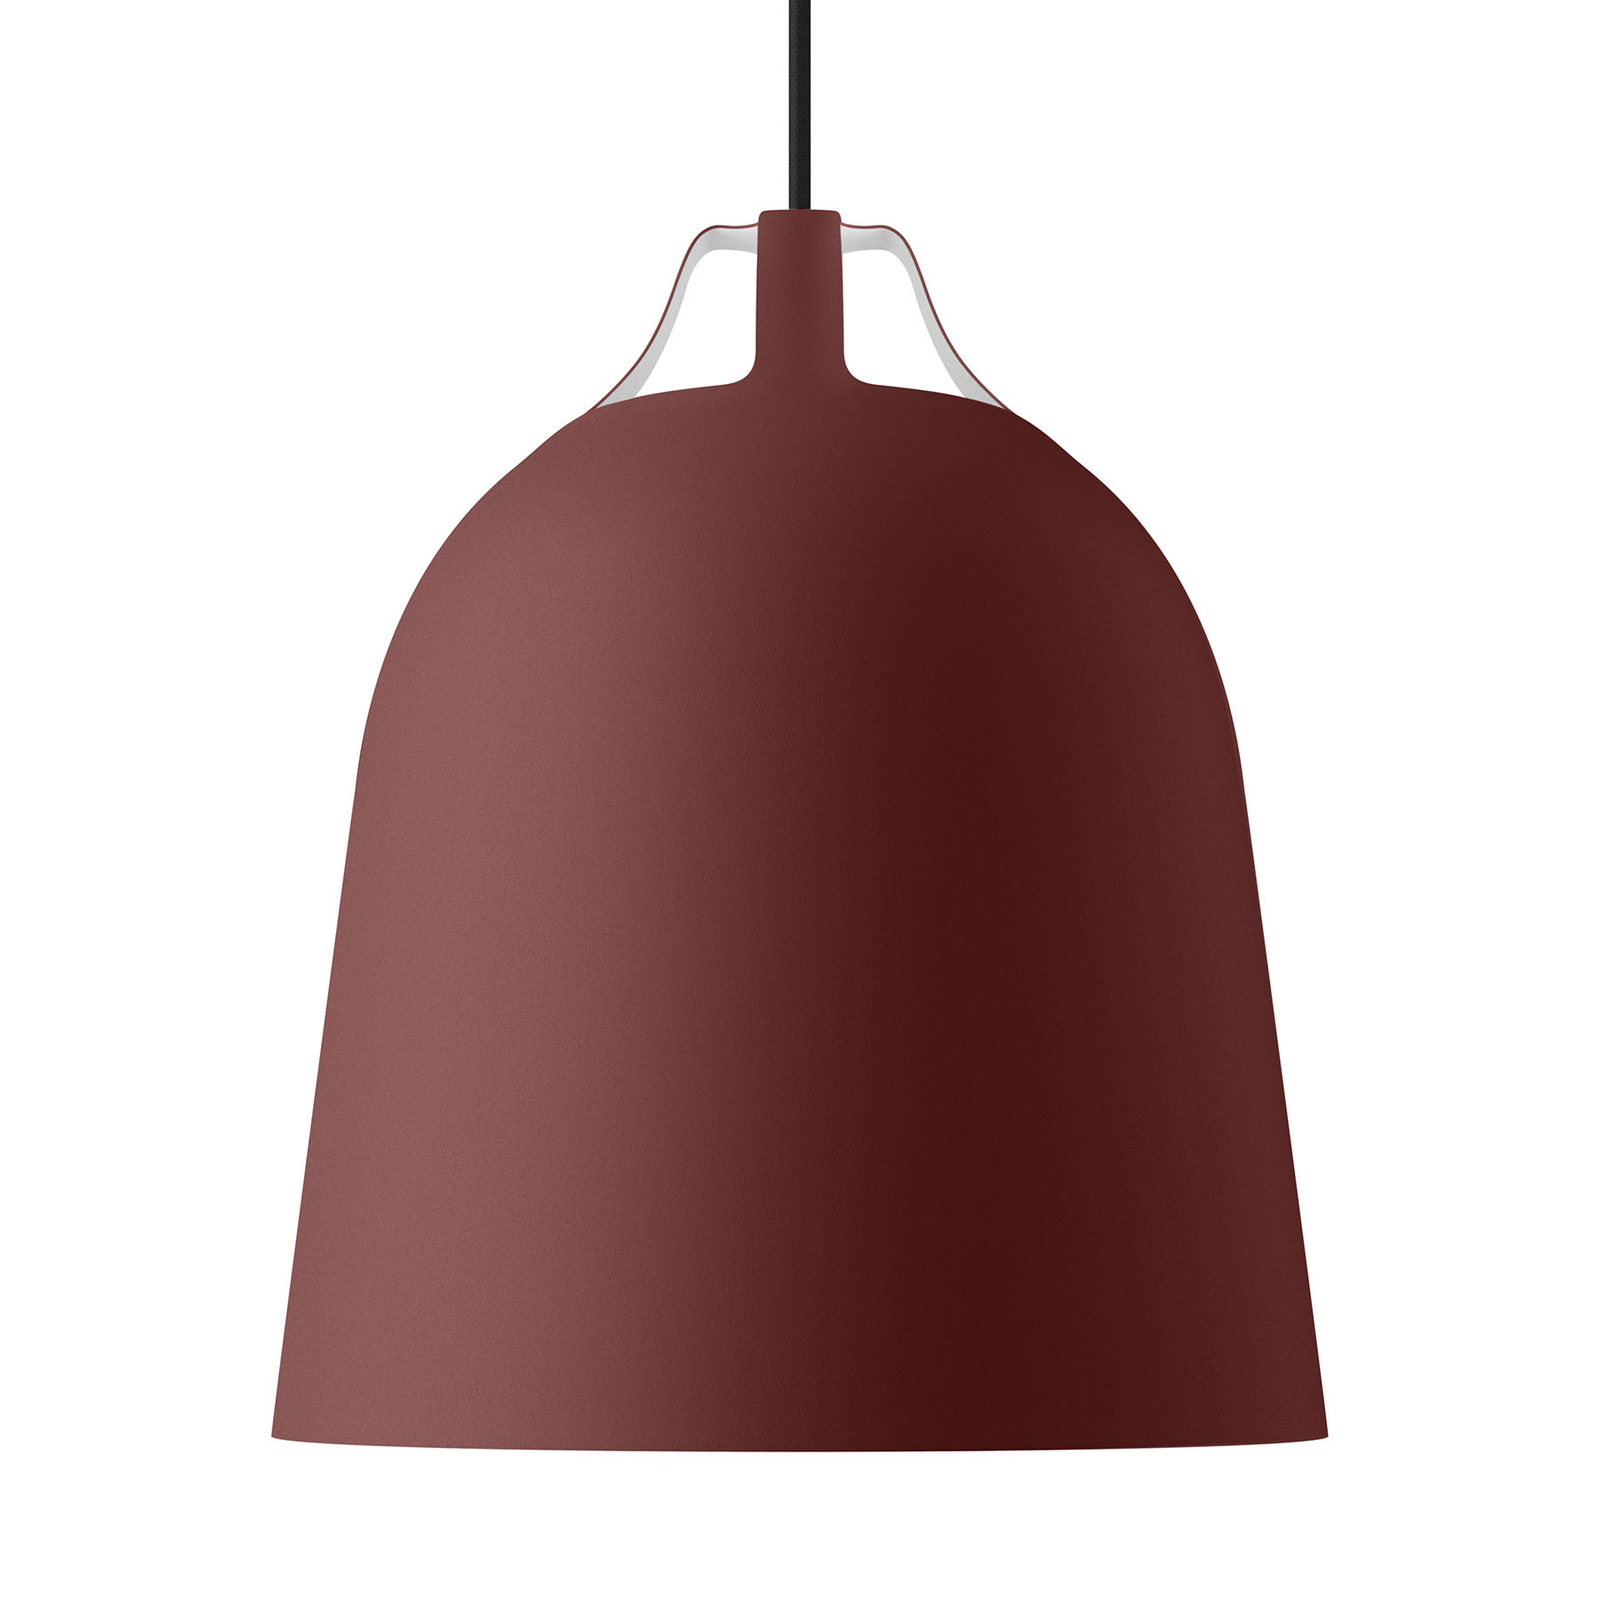 EVA Solo Clover hængelampe, Ø 29cm, burgunderrød